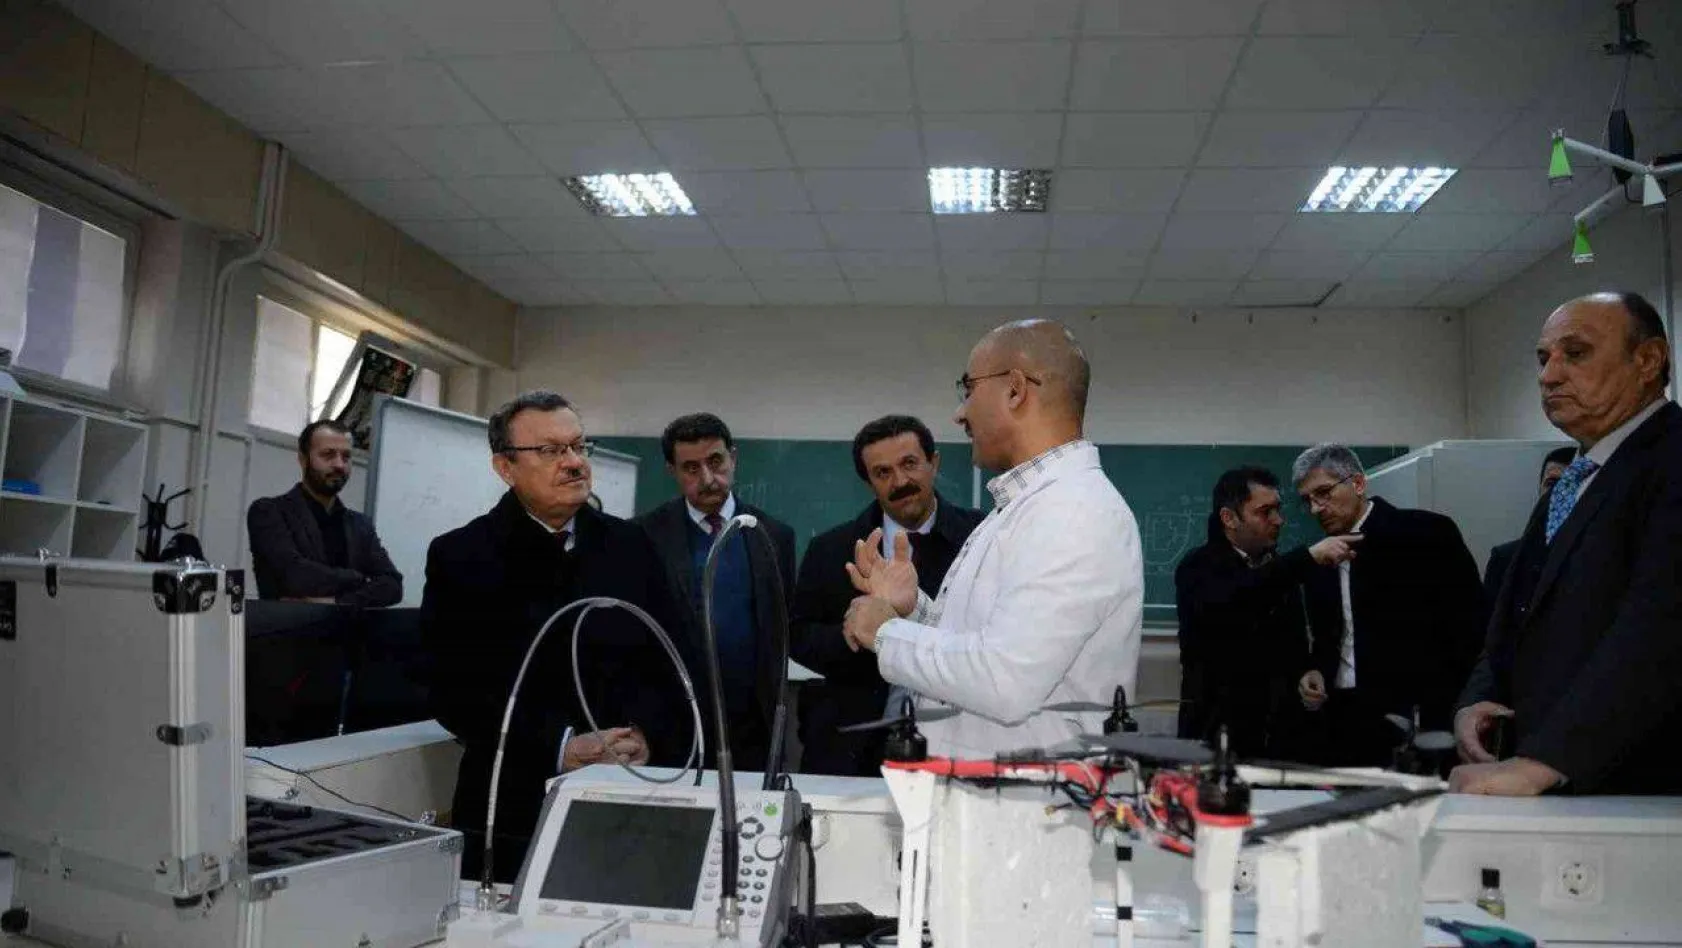 Uludağ Üniversitesi'nde modern laboratuvarlarda güçlü bilimsel çalışmalara imza atılıyor